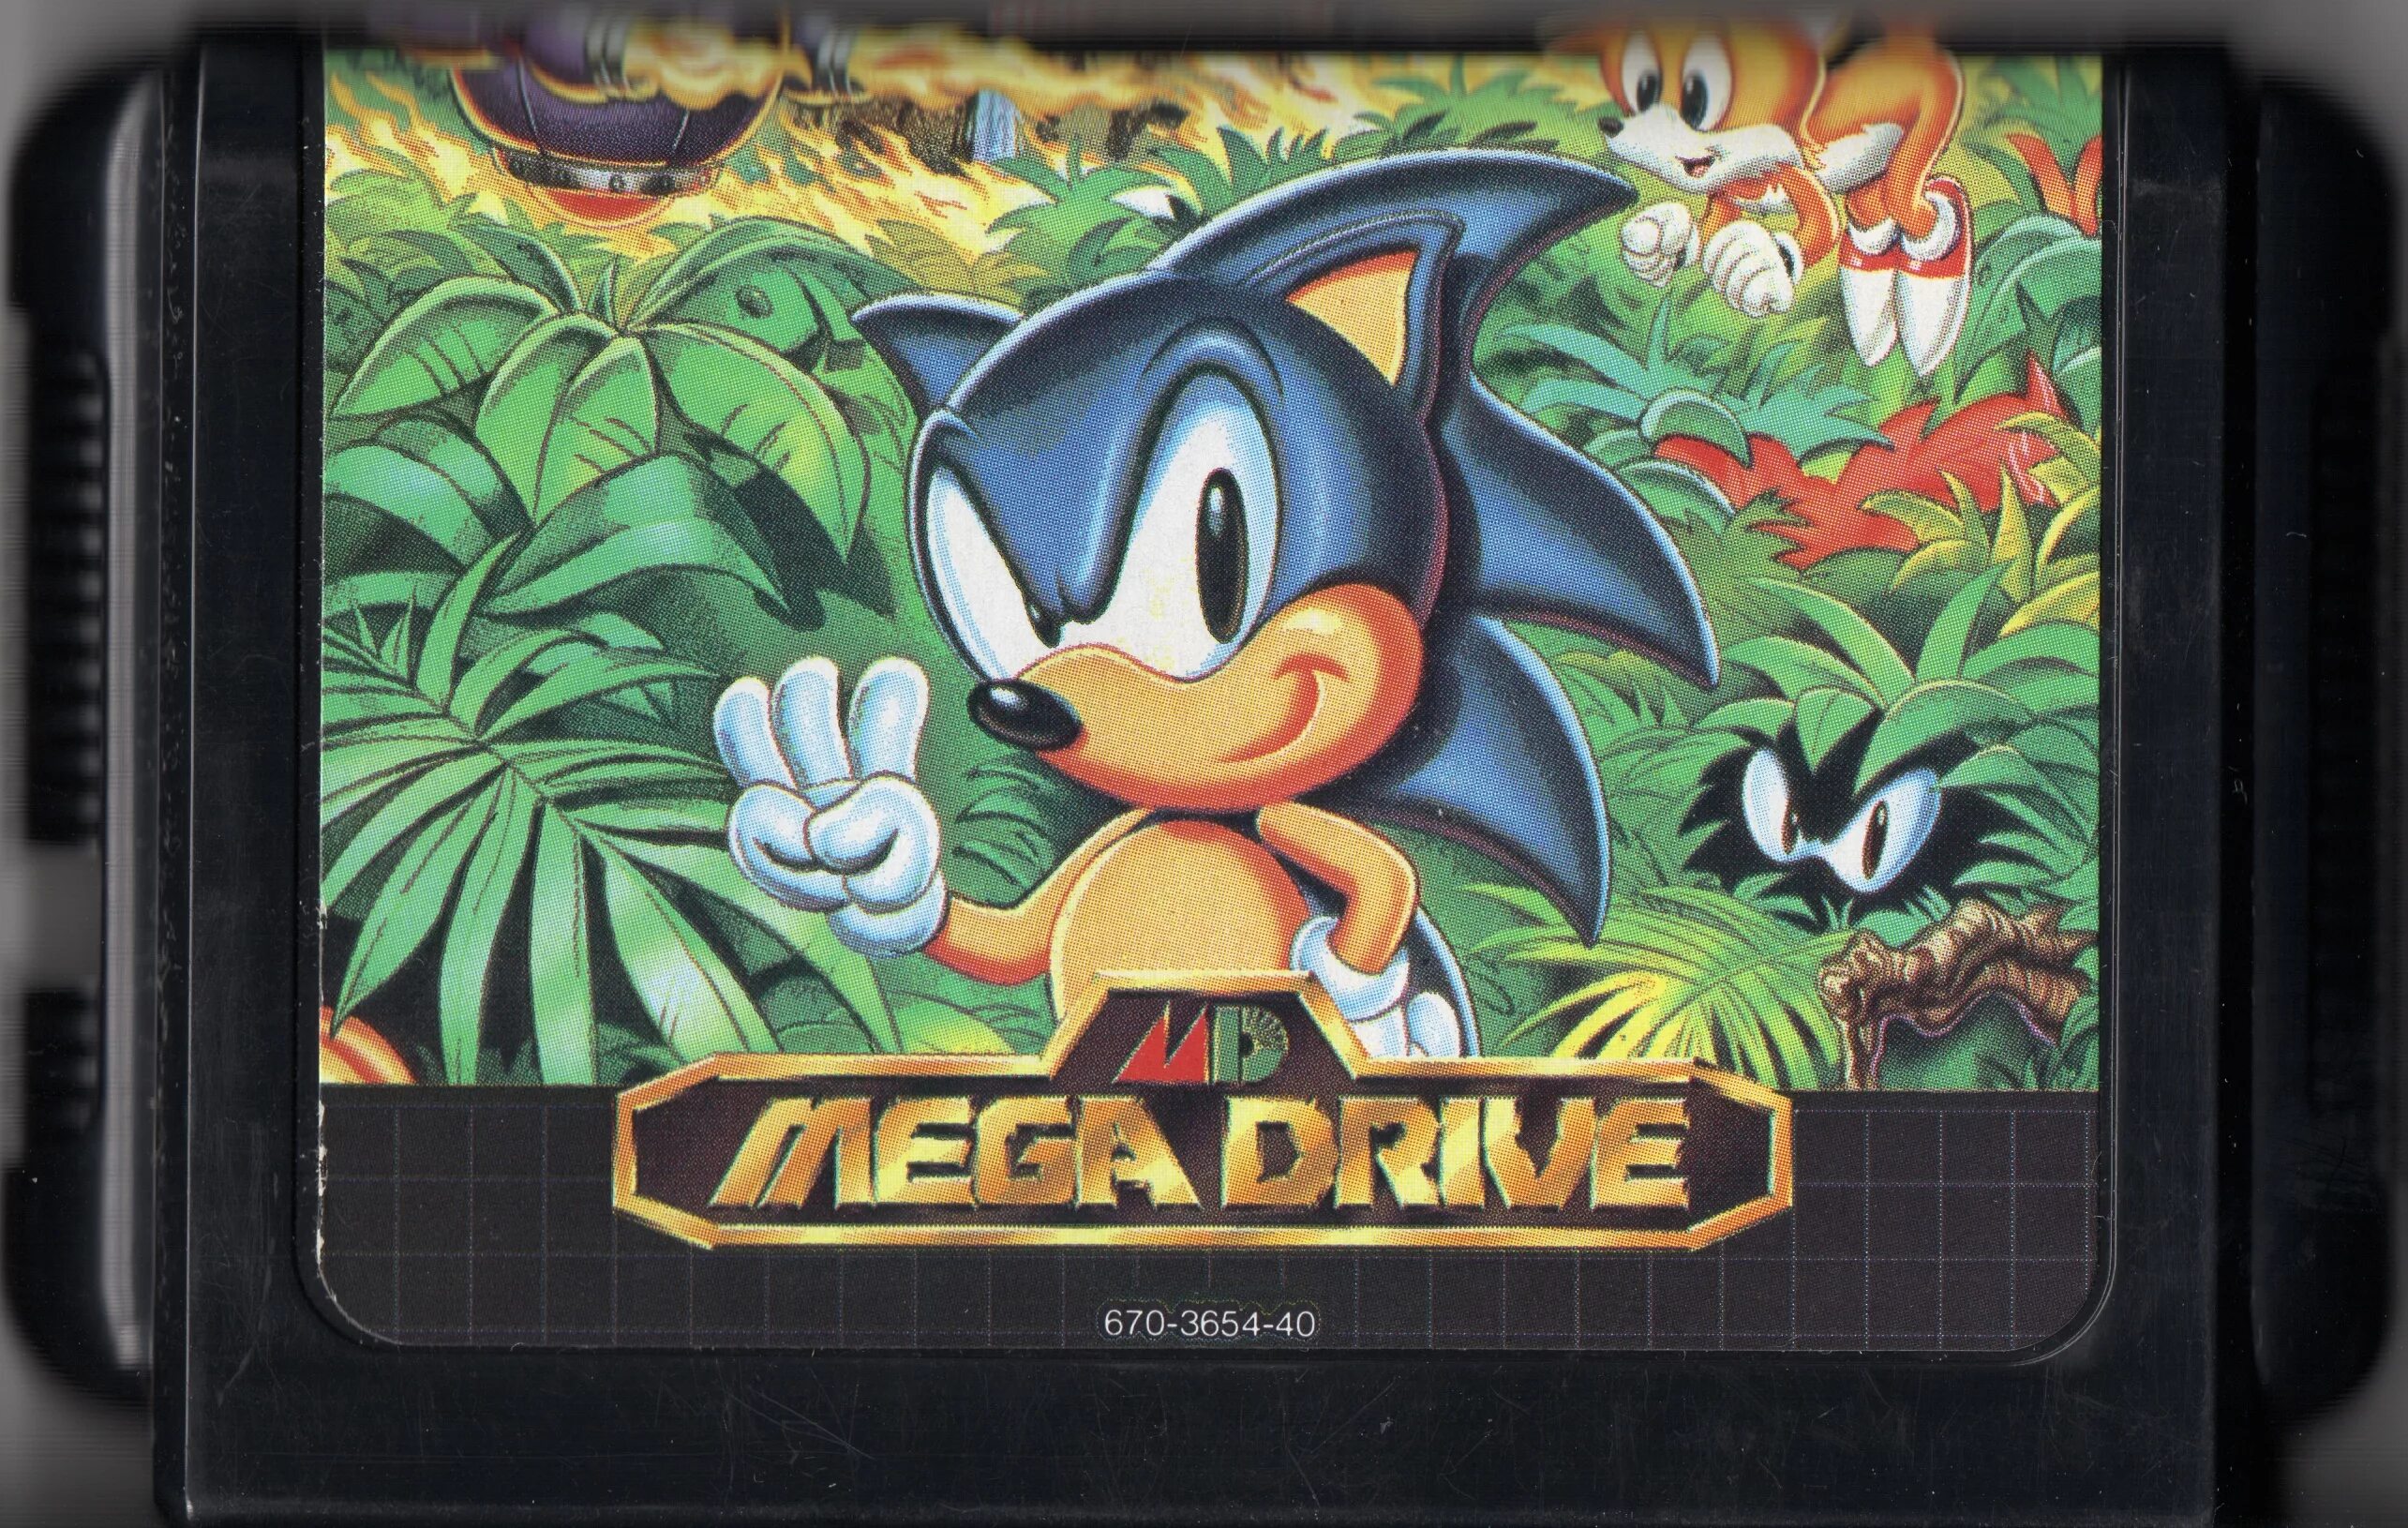 Sonic 3 extra slot. Sega Mega Drive картриджи Sonic. Sega Mega Drive Cartridge Sonic 1. Sega Mega Drive 2 картриджи Sonic. Sonic 3 Sega Mega Drive.